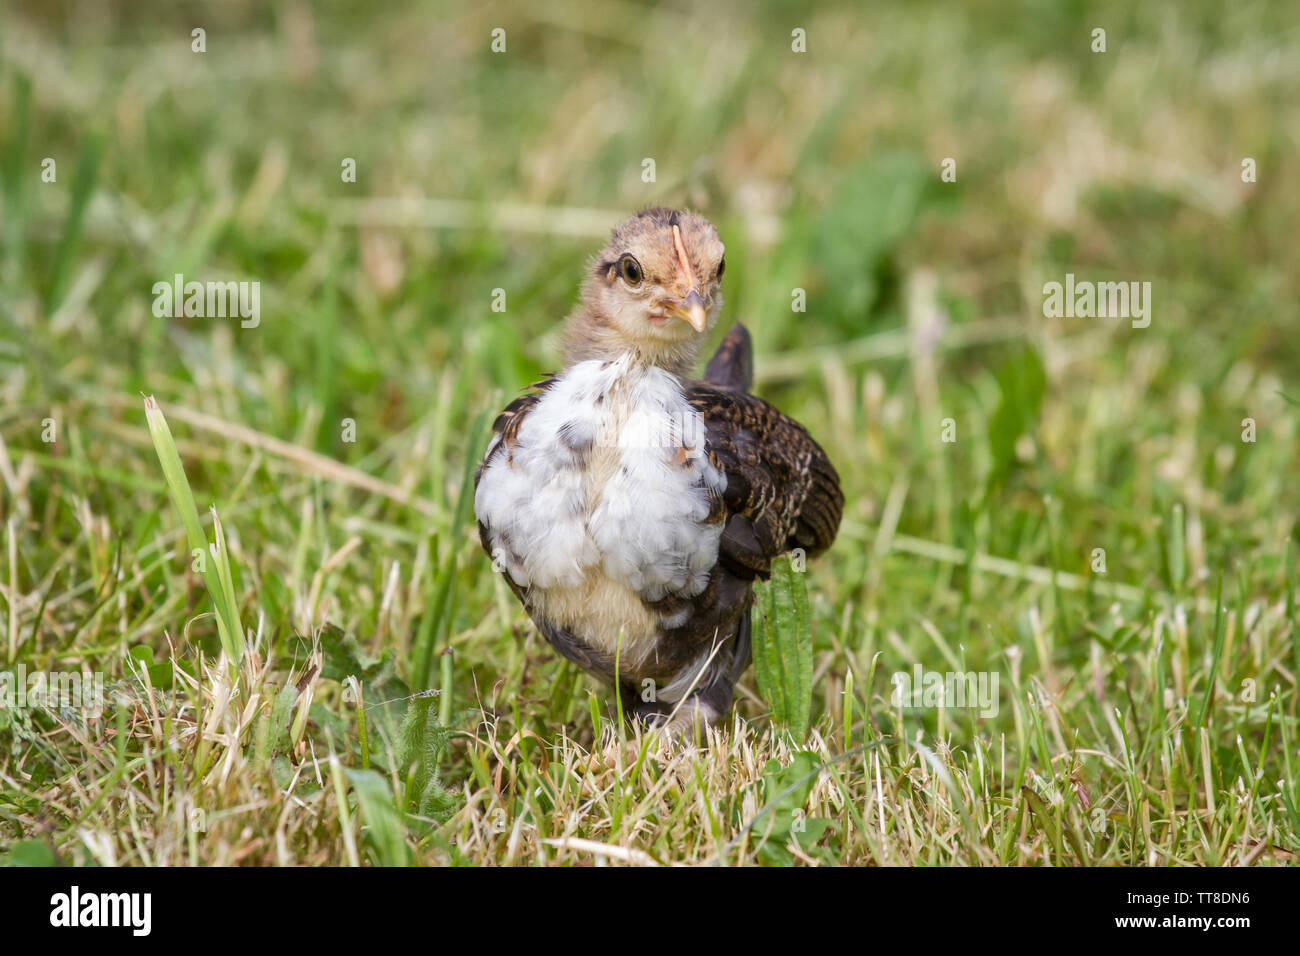 Stoapiperl/Steinhendl Jungen auf der Wiese, einer vom Aussterben bedrohten Rasse Huhn aus Österreich, Europa Stockfoto